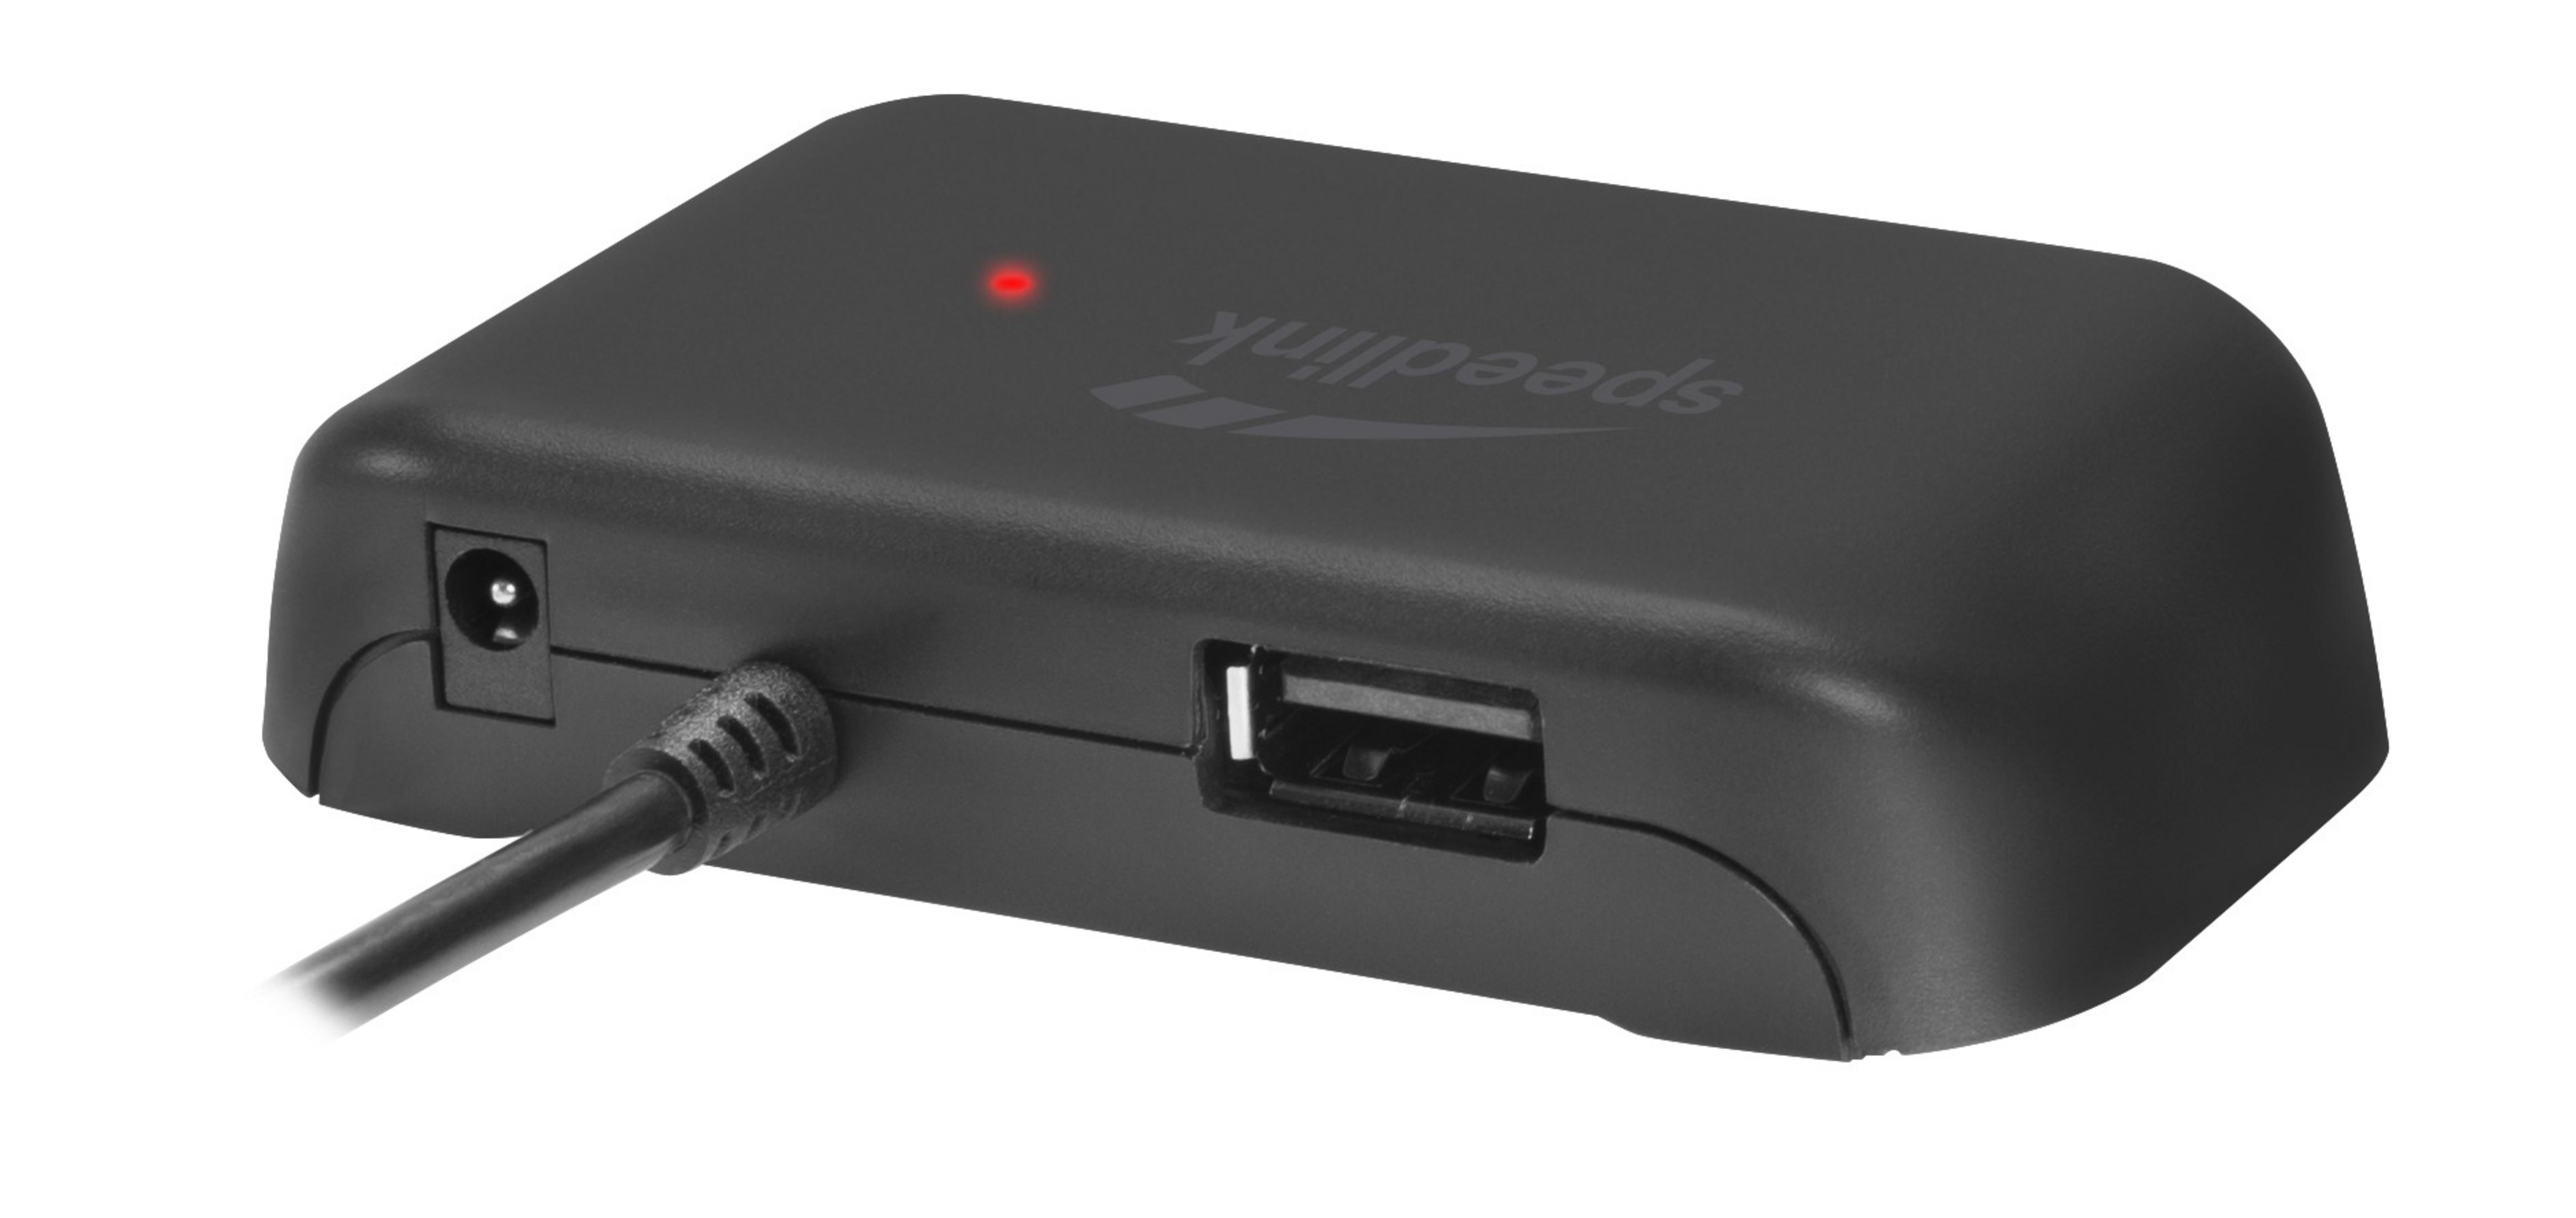 Hub, USB USB SL-140004-BK SNAPPY 4-PORT EVO HUB Schwarz SPEEDLINK 2.0,